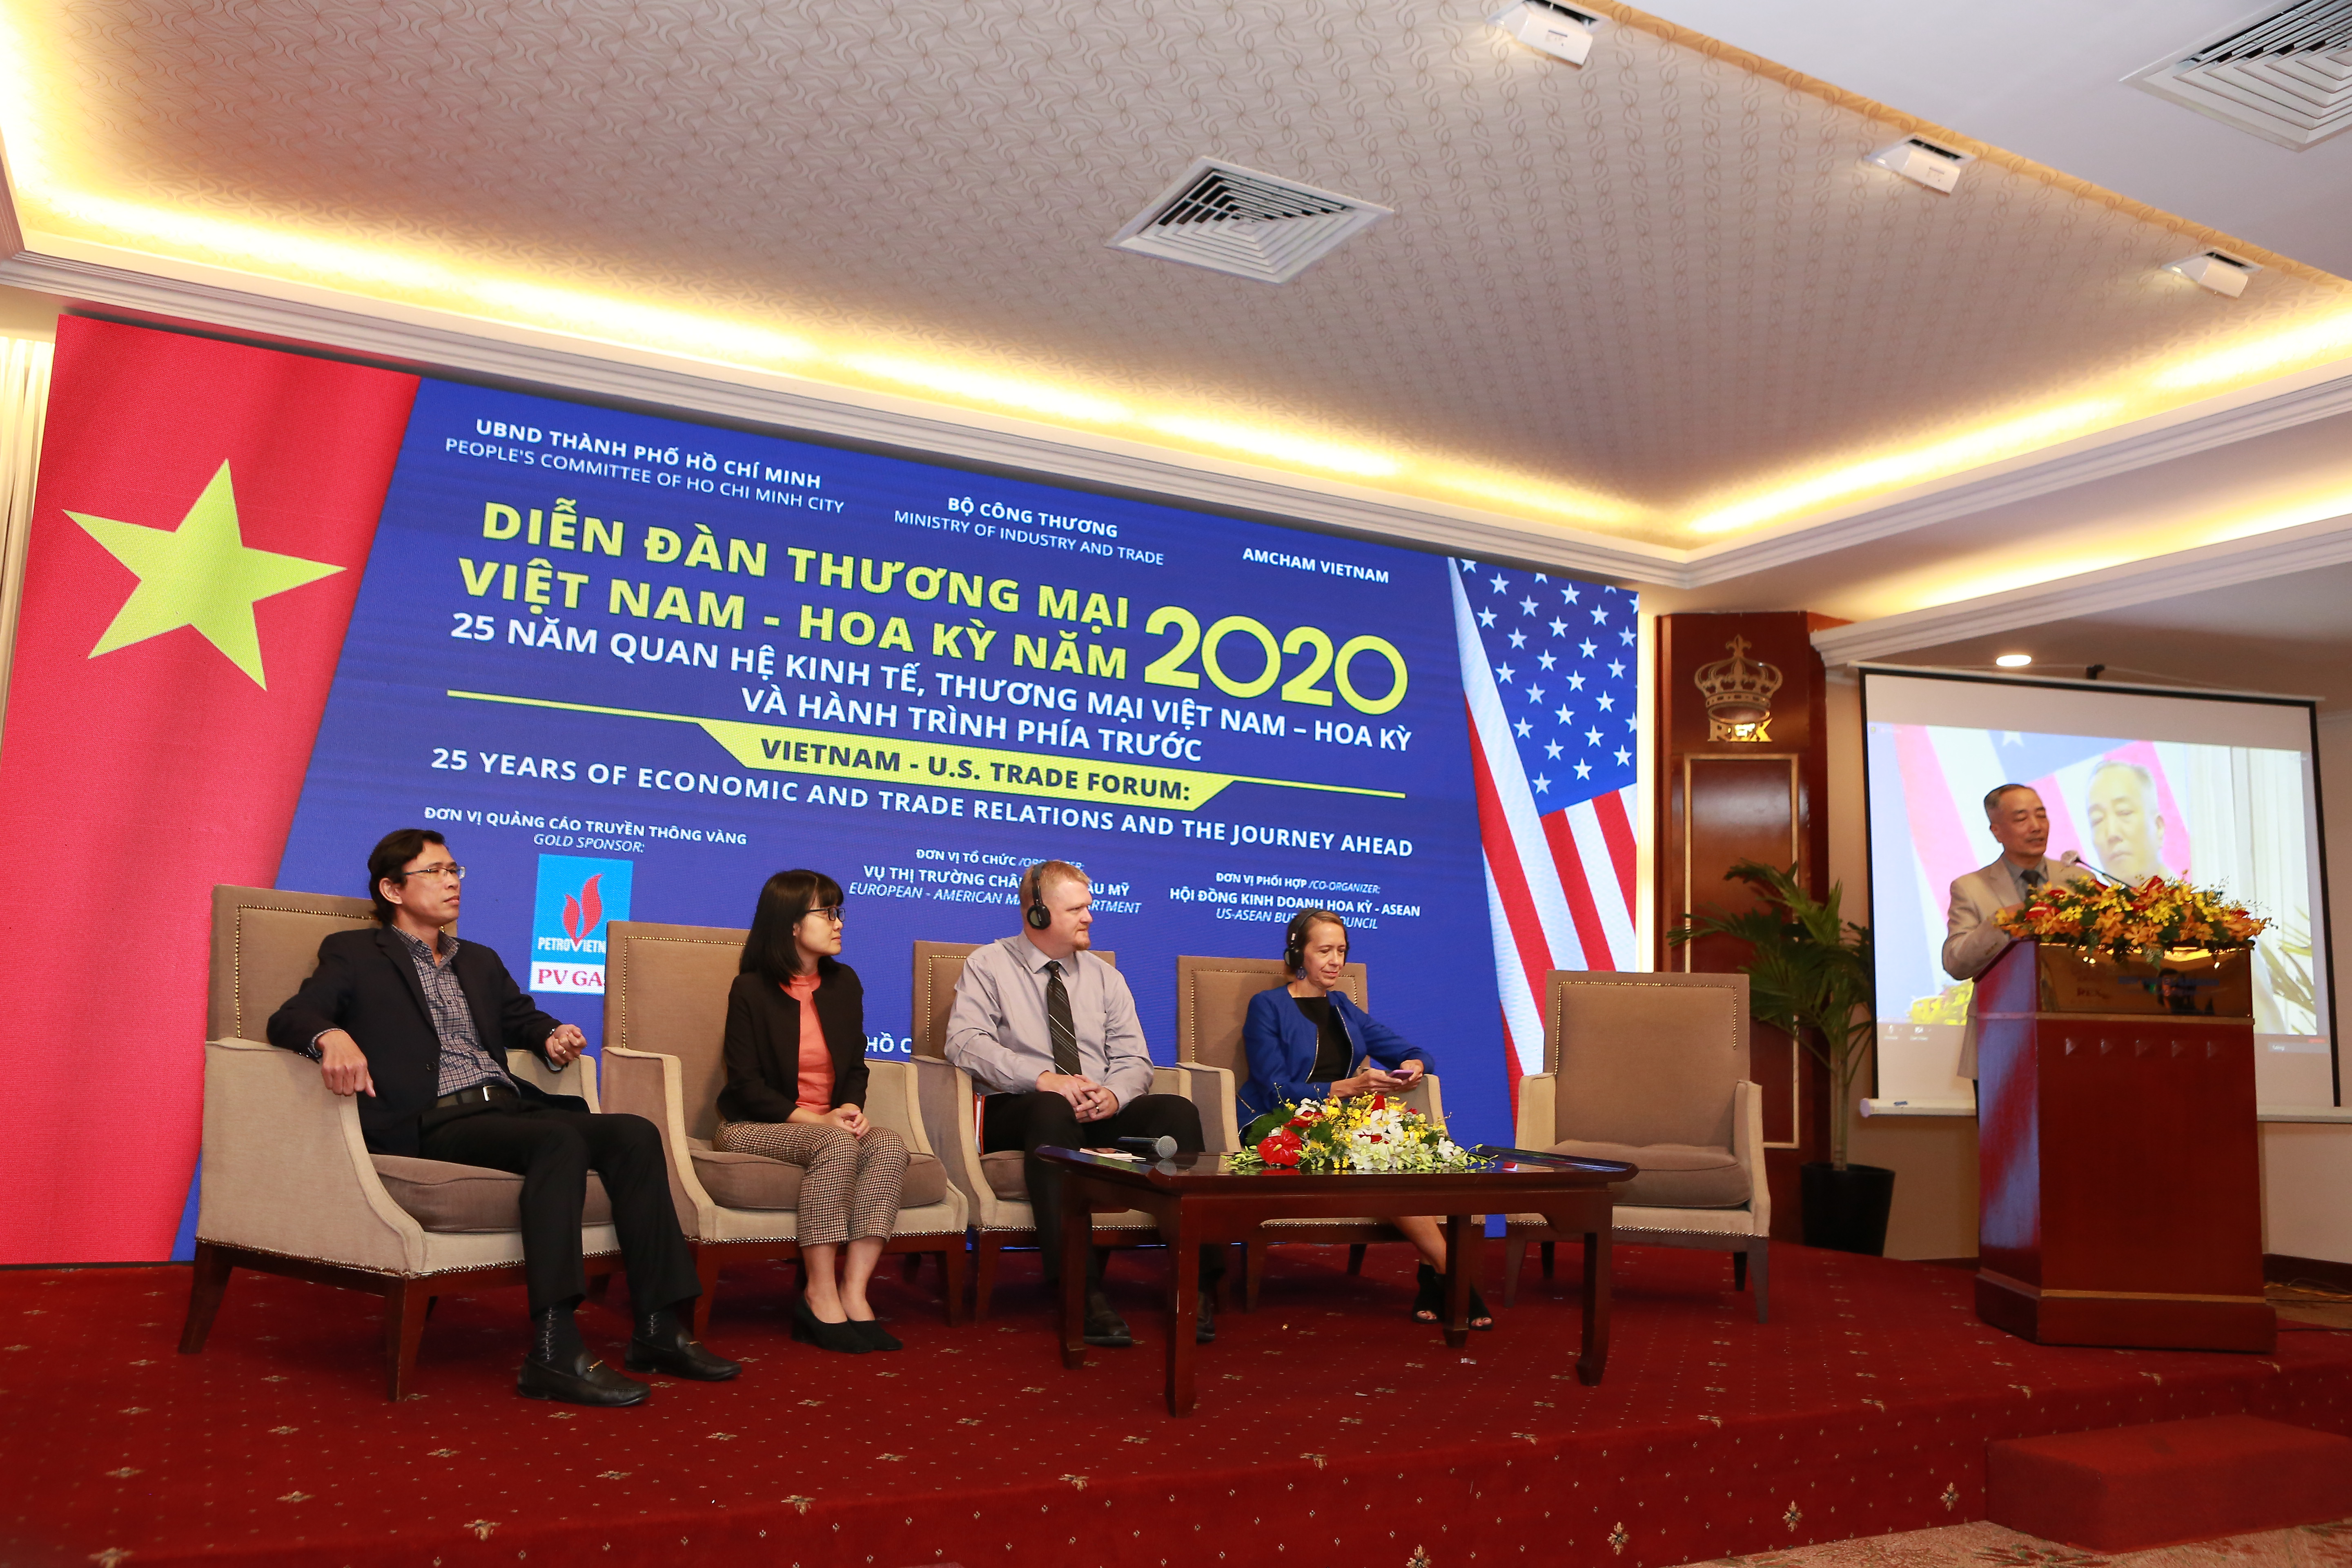 25 năm quan hệ kinh tế, thương mại Việt Nam – Hoa Kỳ và Hành trình phía trước